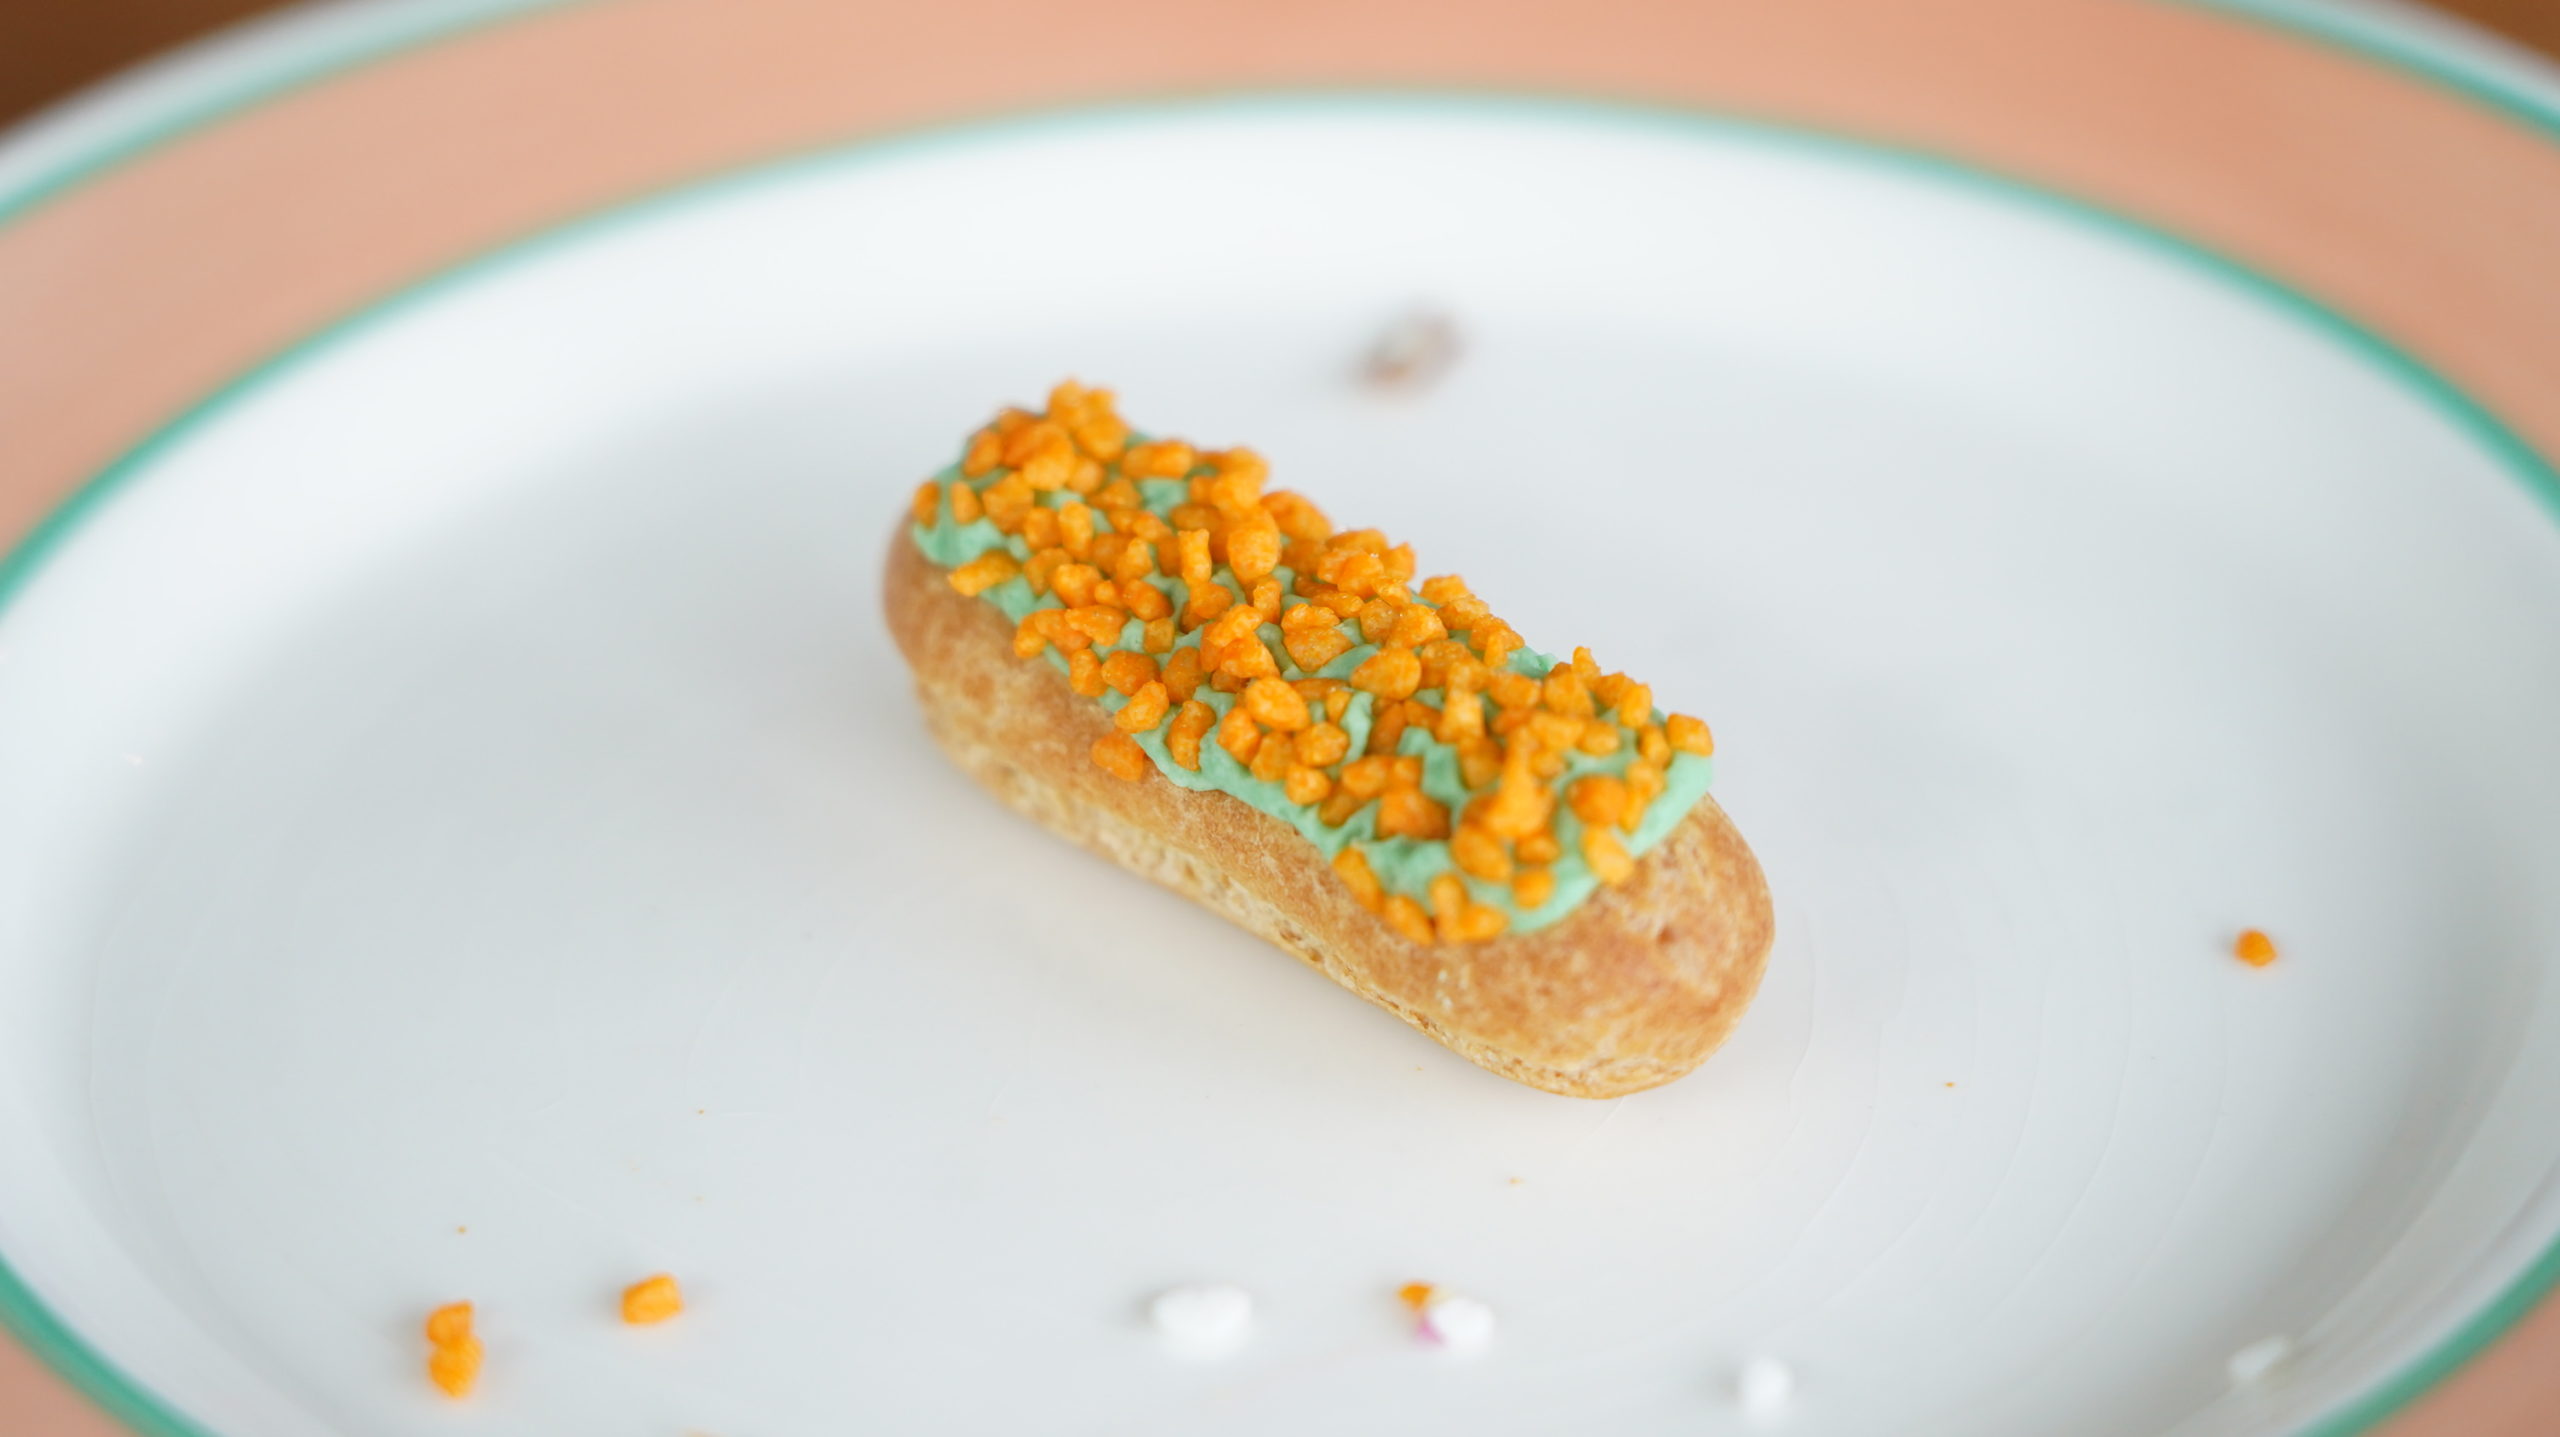 ピカールの冷凍食品「食いしん坊のミニエクレア」のピスタチオ味の写真